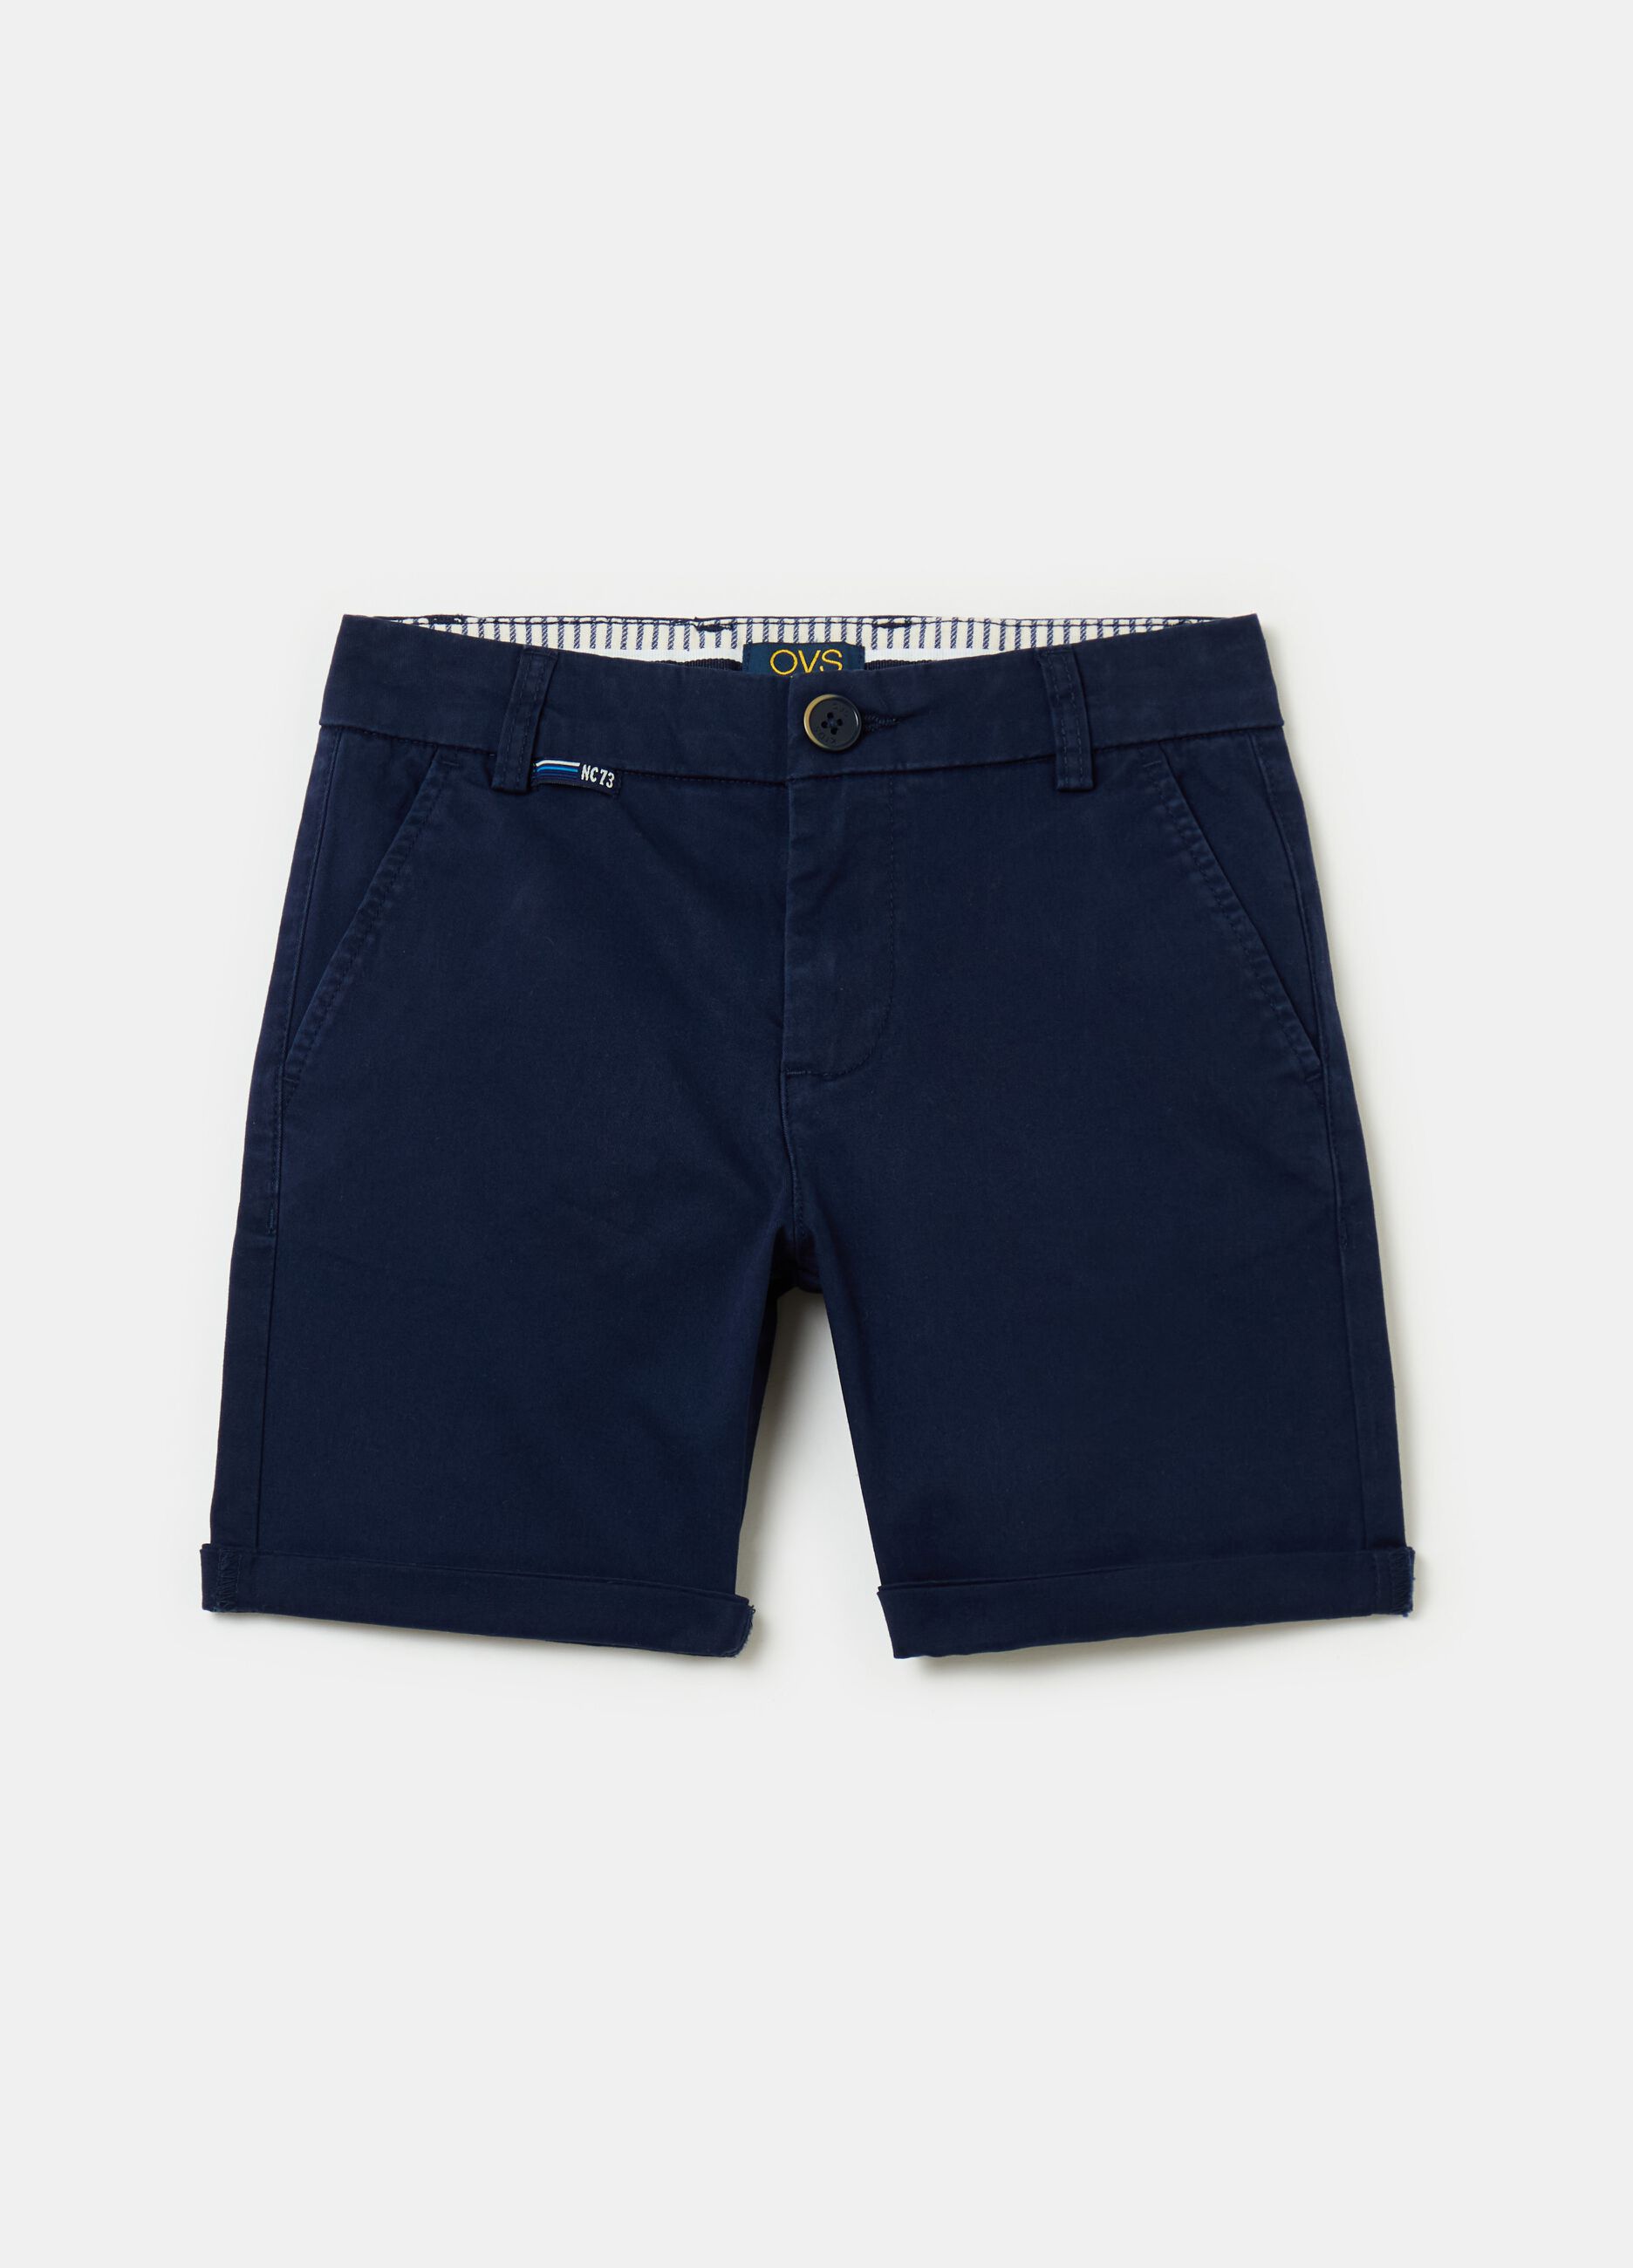 Chino Bermuda shorts with pockets